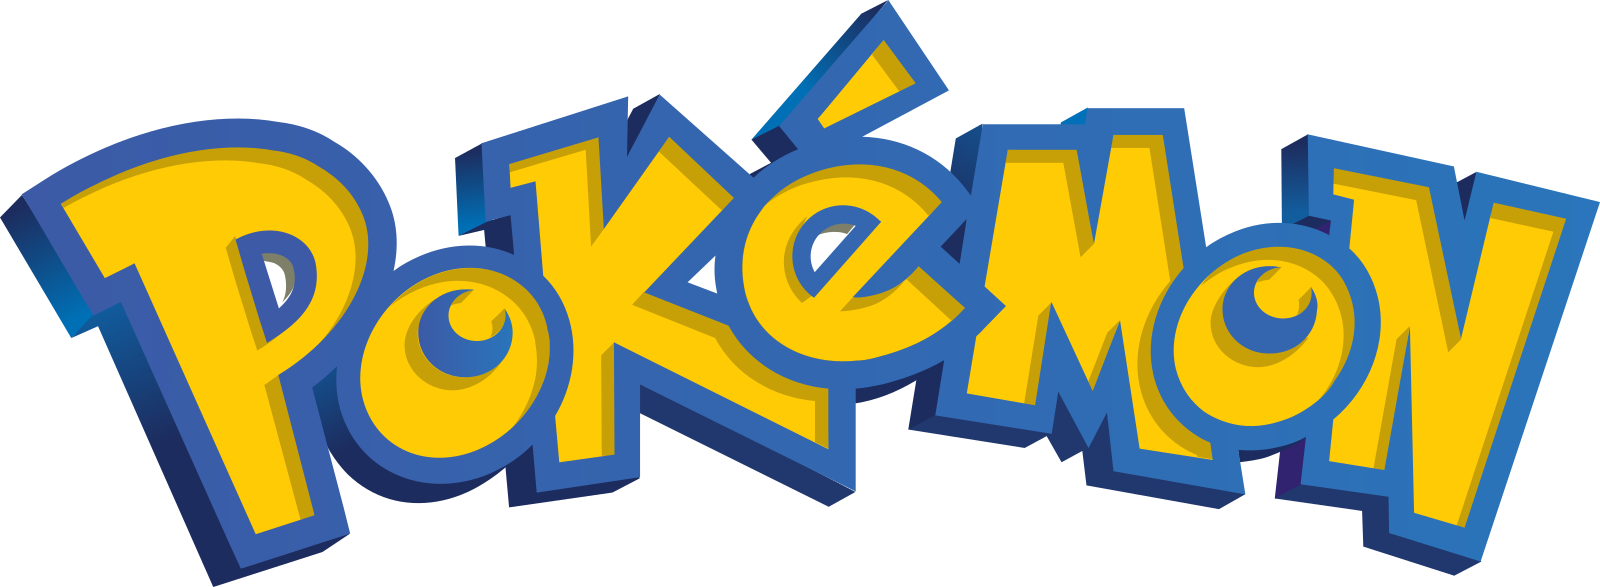 Pokemon Logo PNG HD